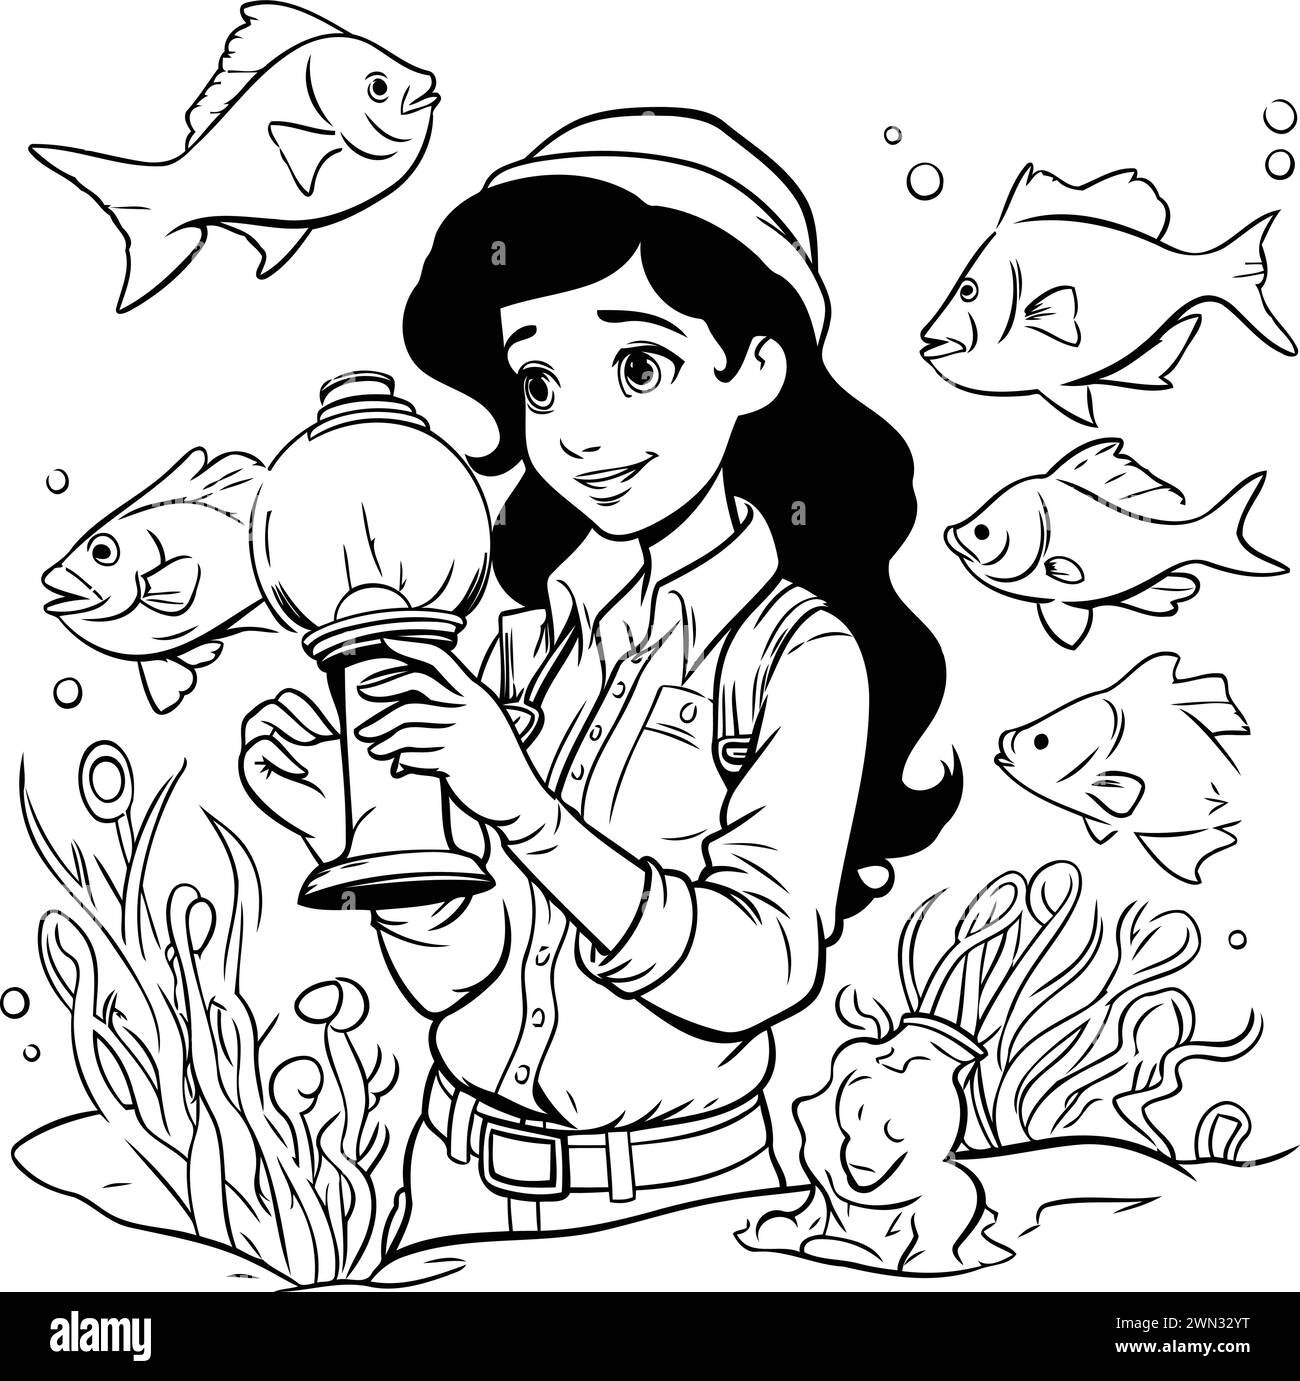 Illustrazione di un cartone animato di una ragazza che tiene una lanterna e guarda i pesci Illustrazione Vettoriale